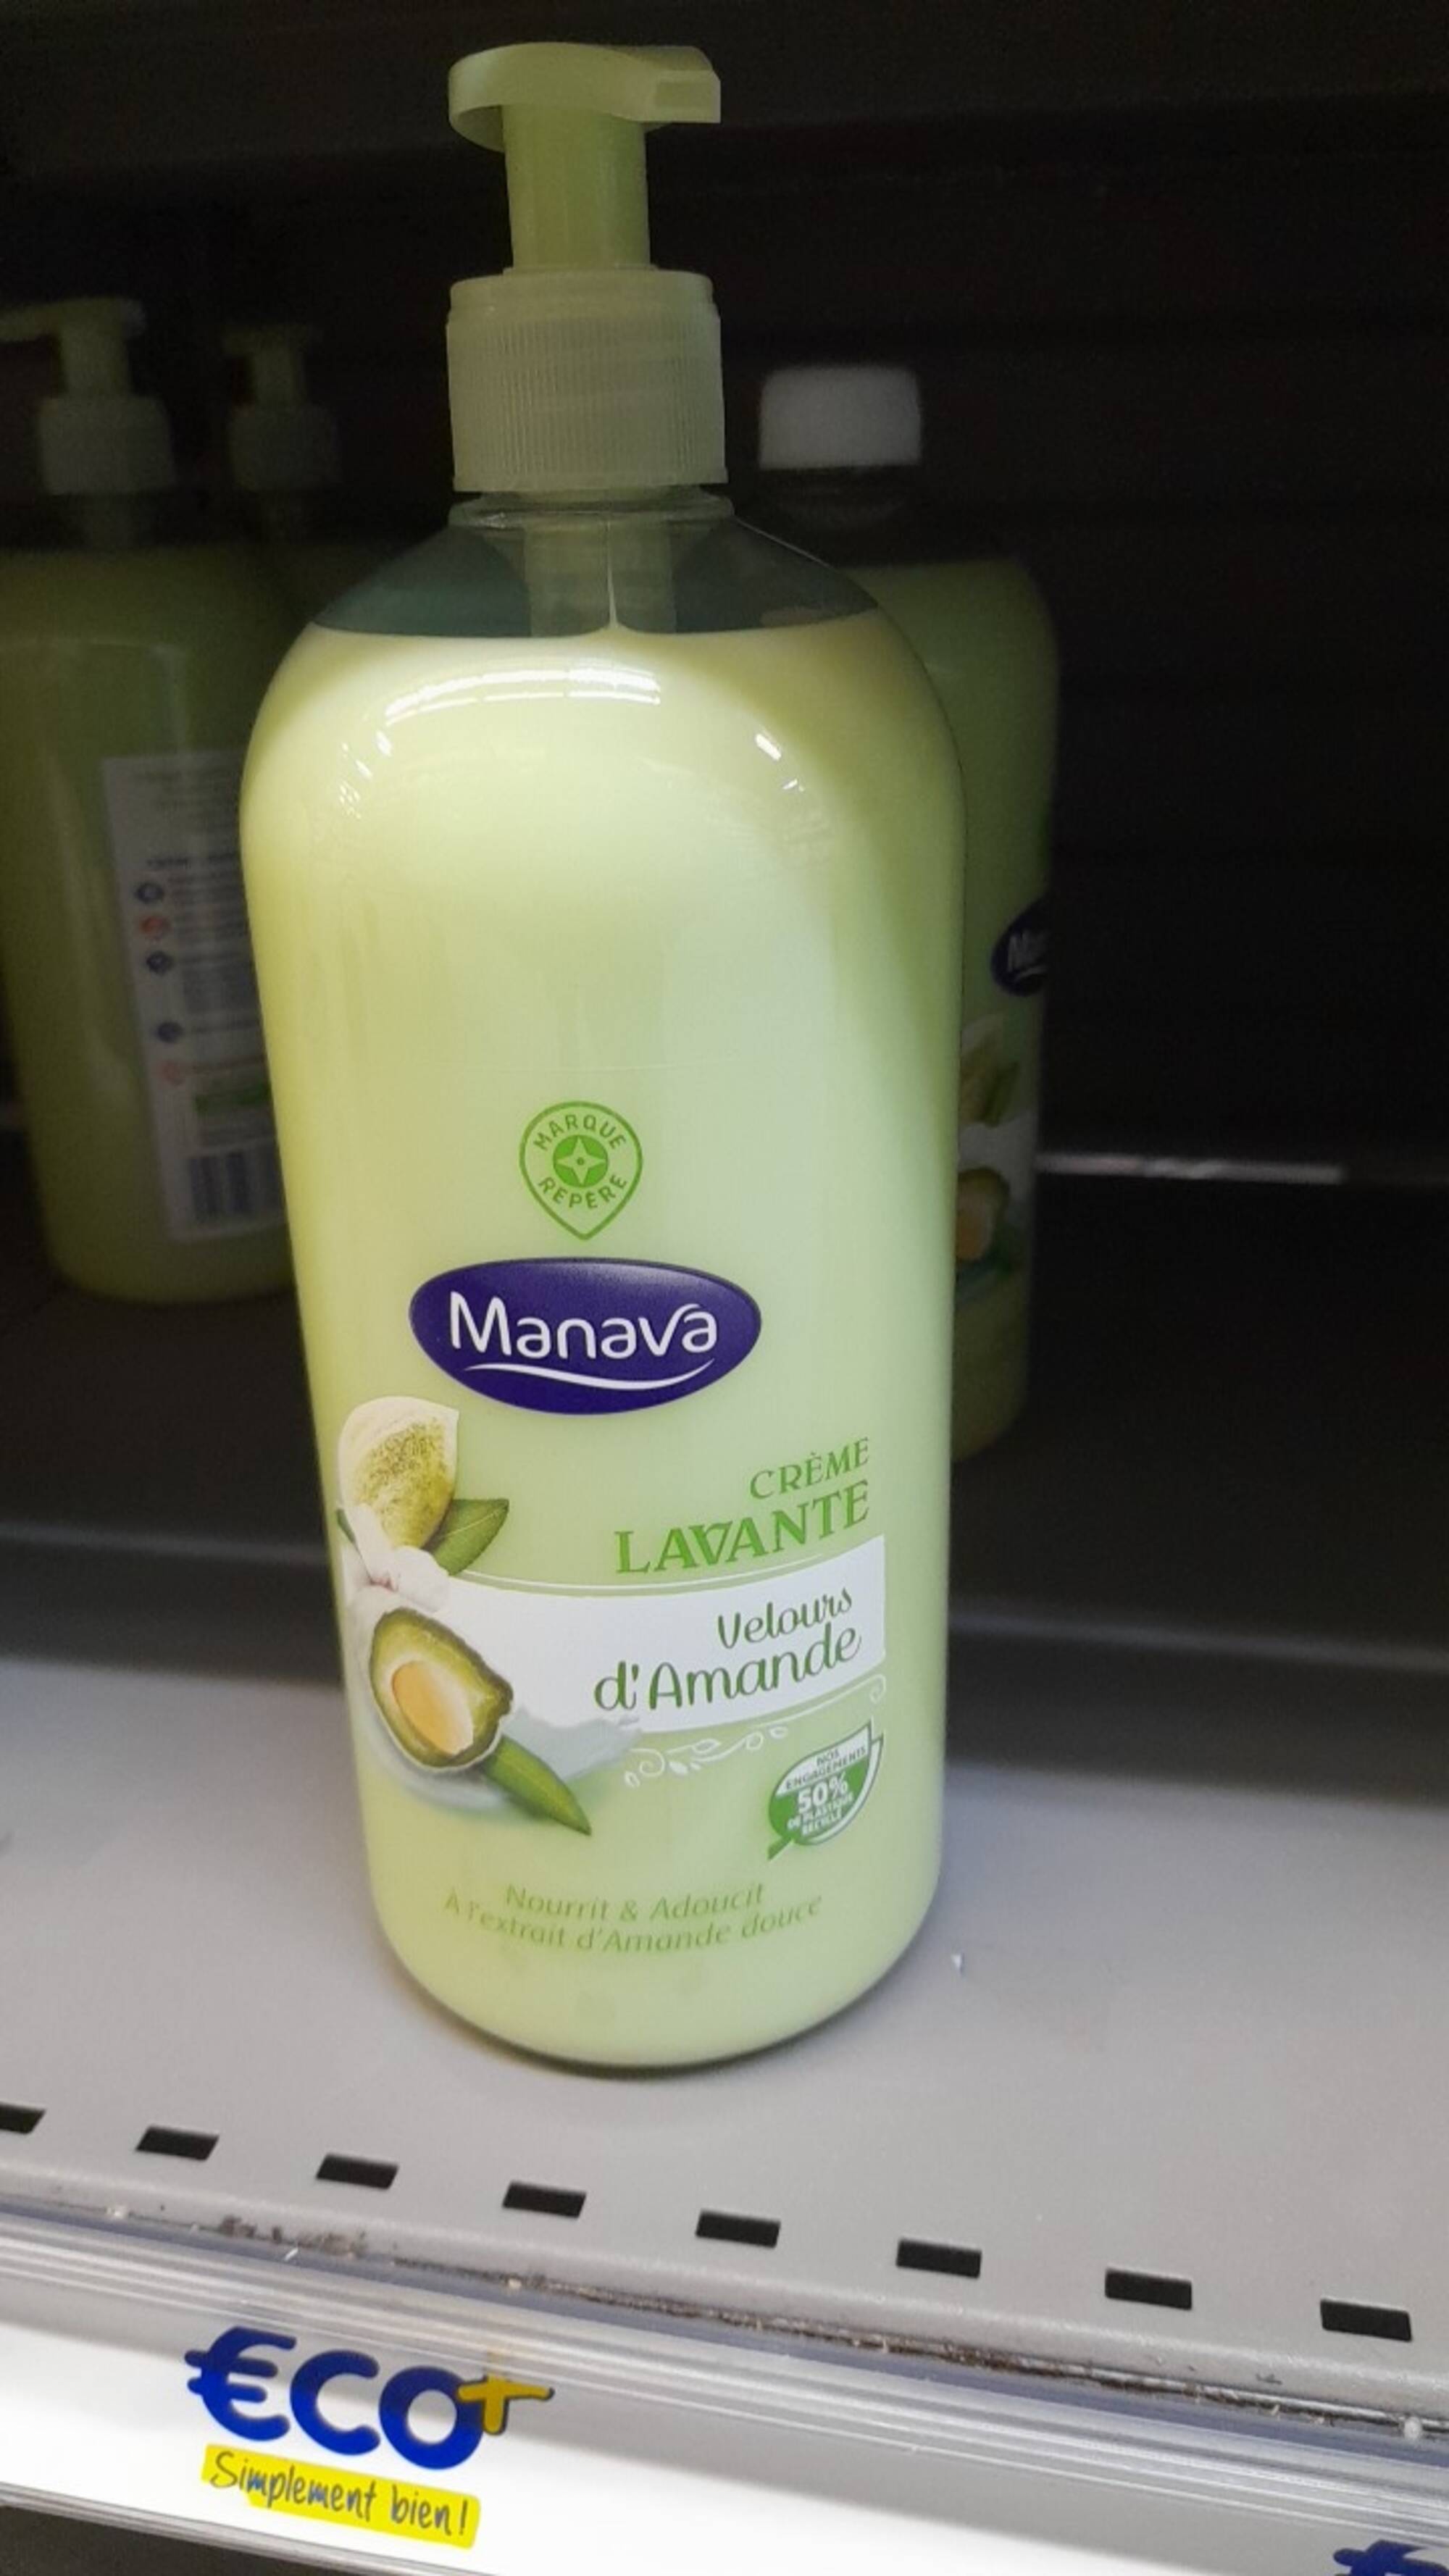 MARQUE REPÈRE - Manava - Crème lavante velours d'amande